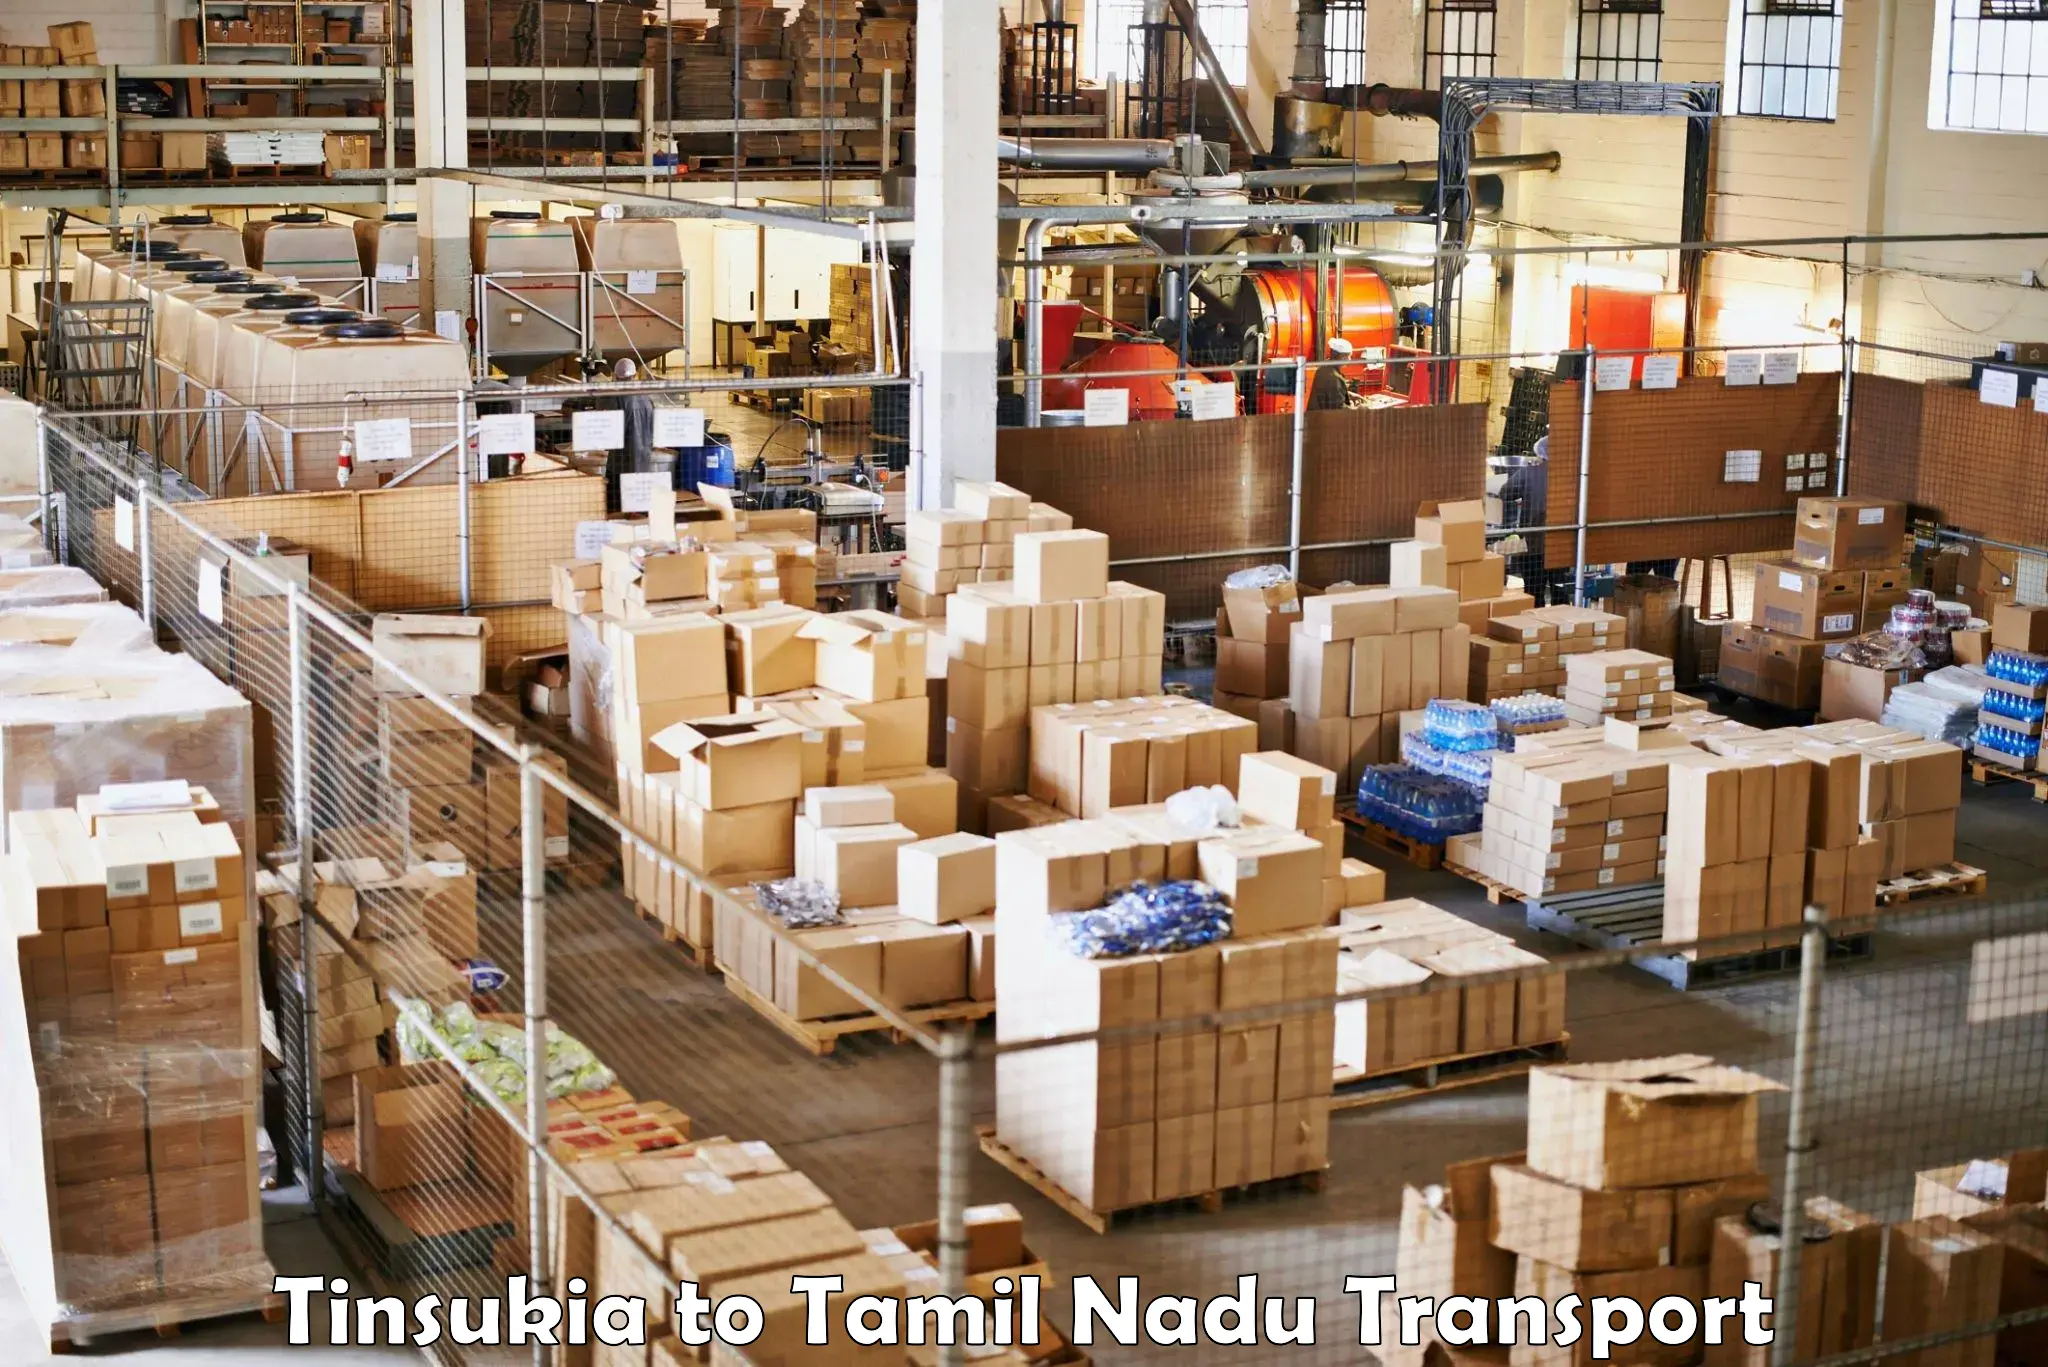 Online transport service Tinsukia to Parangimalai